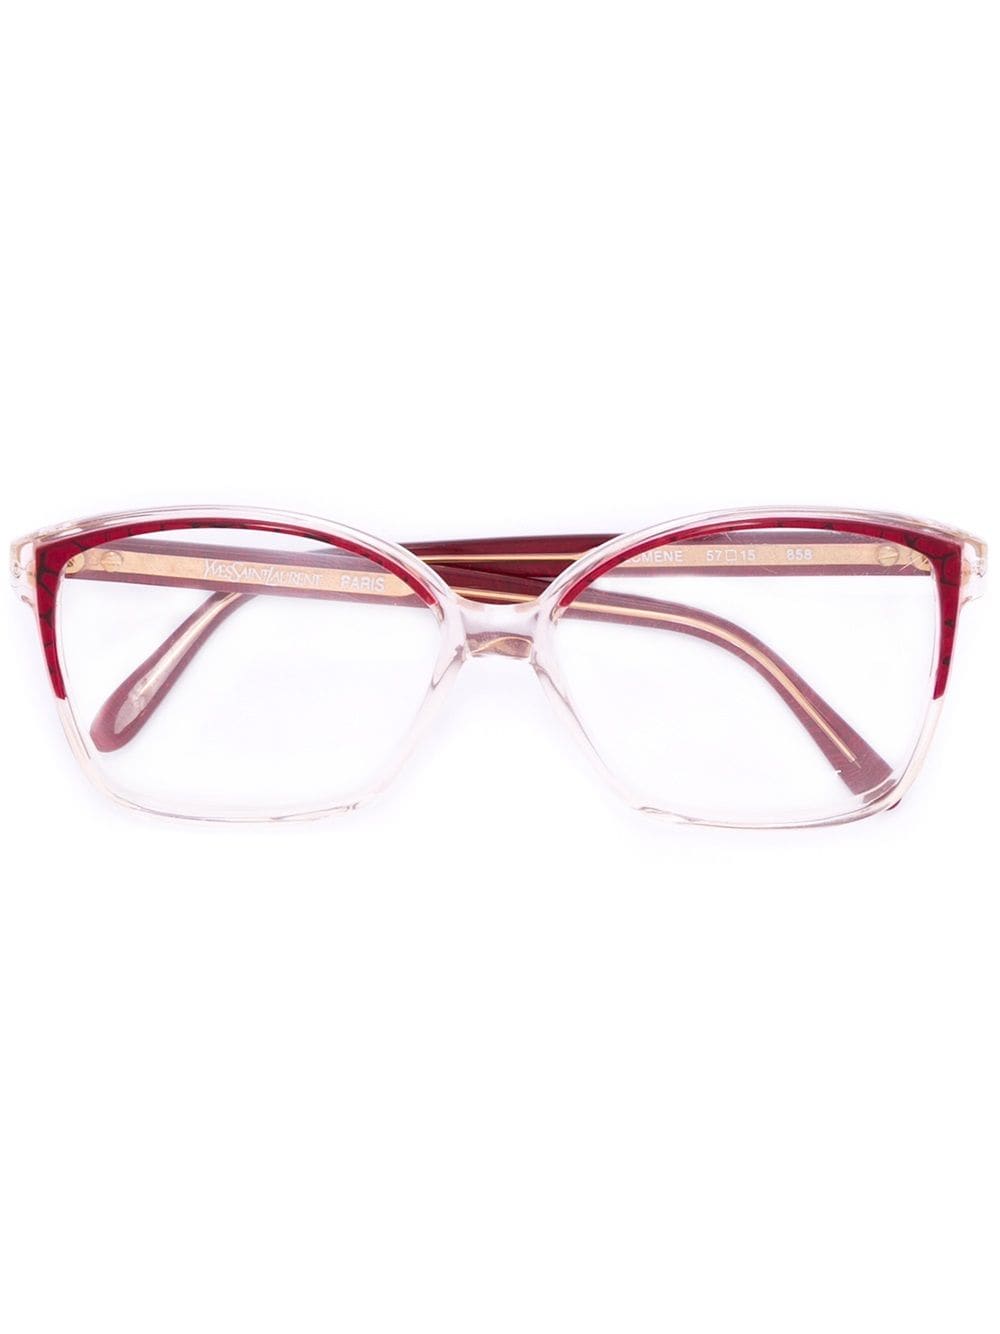 фото Yves Saint Laurent Pre-Owned очки в квадратной оправе